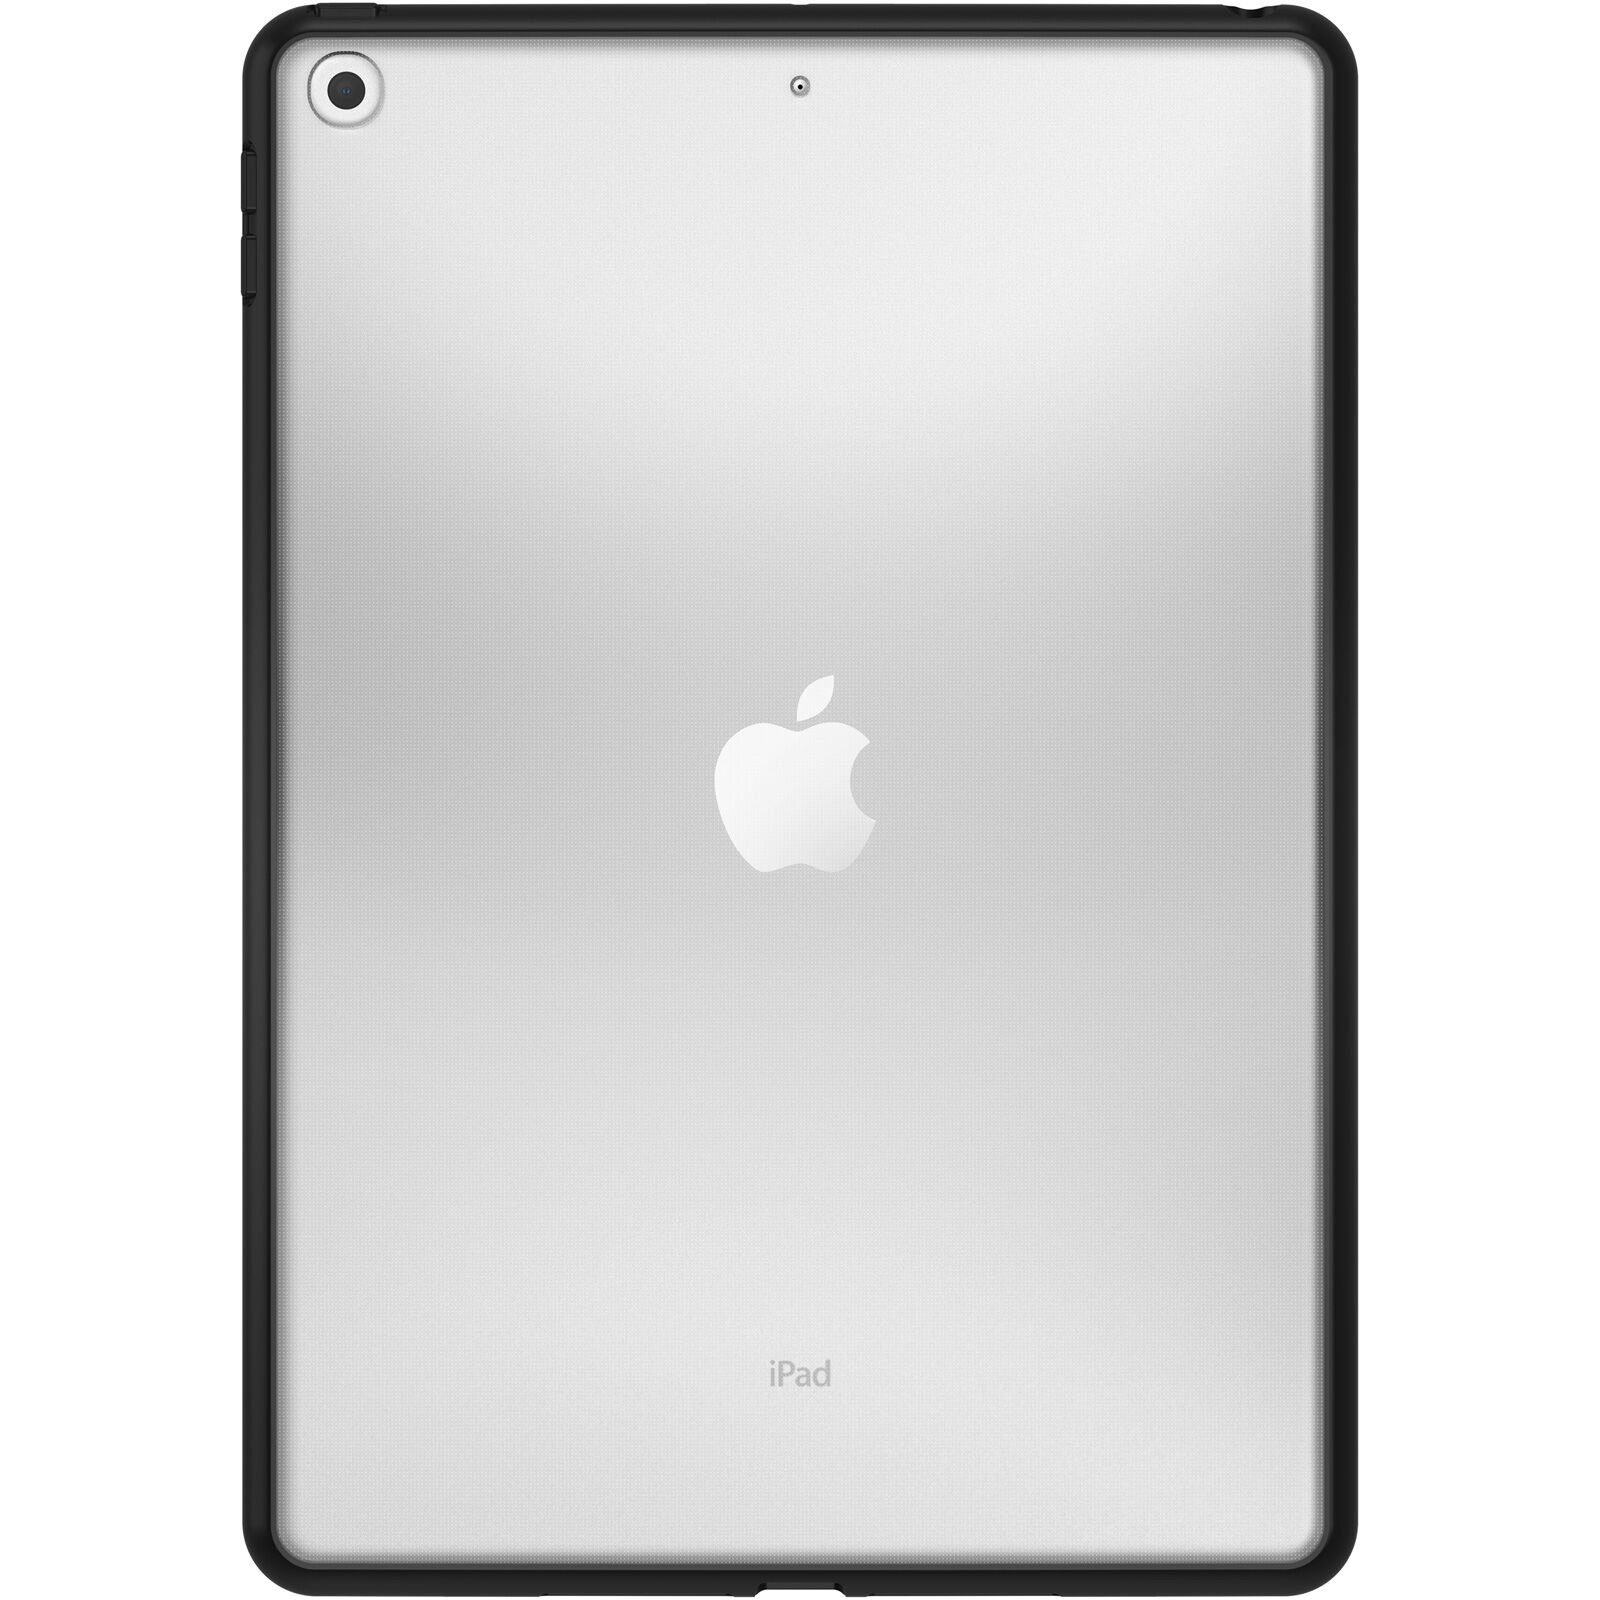 React Kuori iPad 10.2 7th Gen (2019) Black Crystal